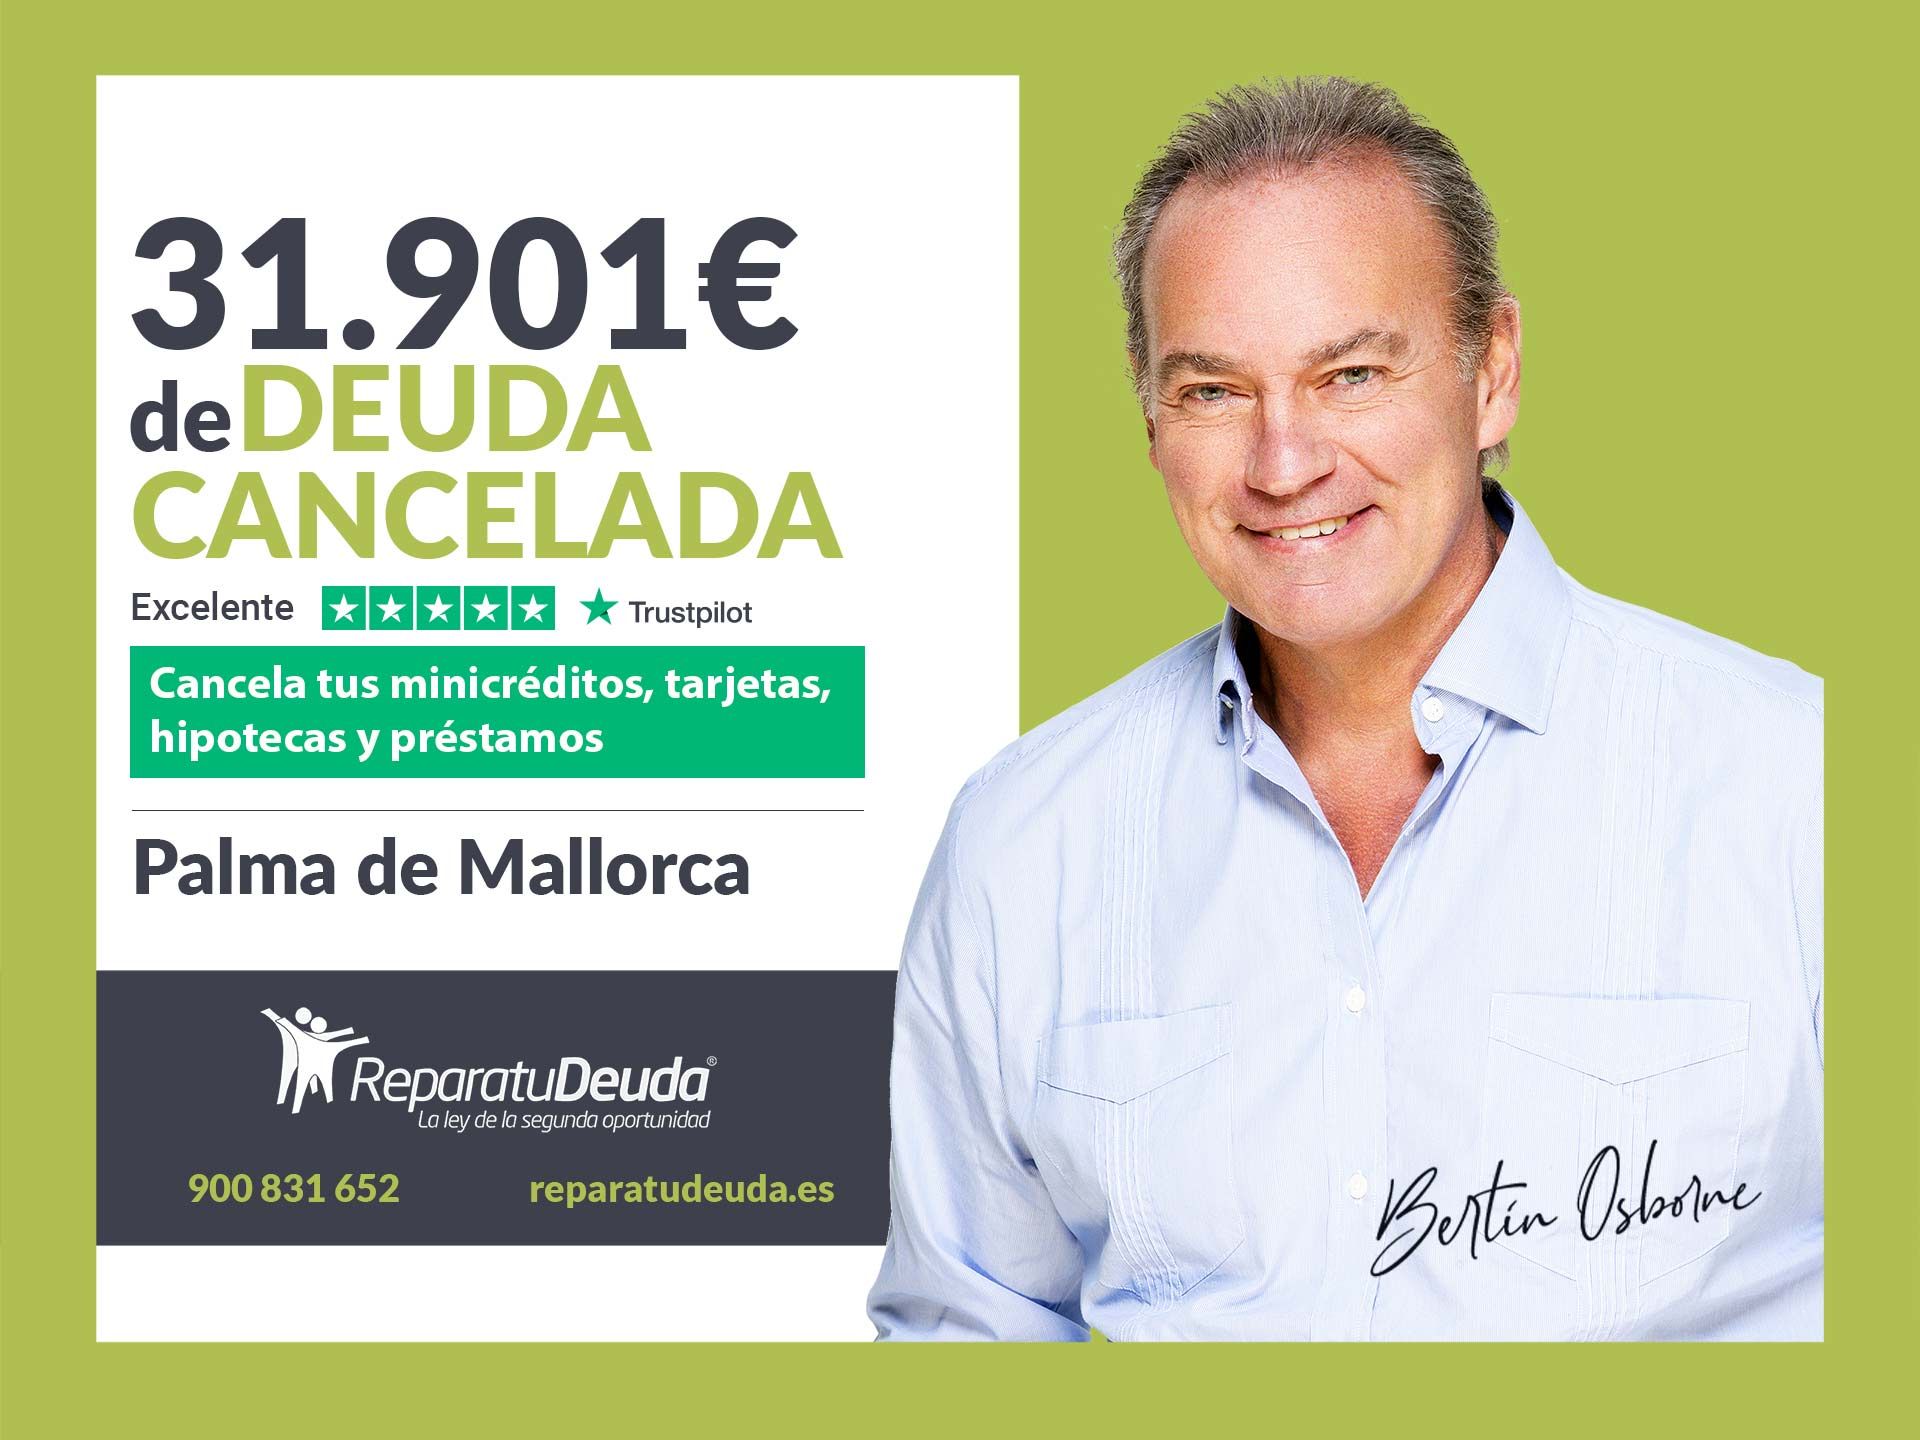 Repara tu Deuda Abogados cancela 31.901? en Palma de Mallorca (Baleares) con la Ley de Segunda Oportunidad